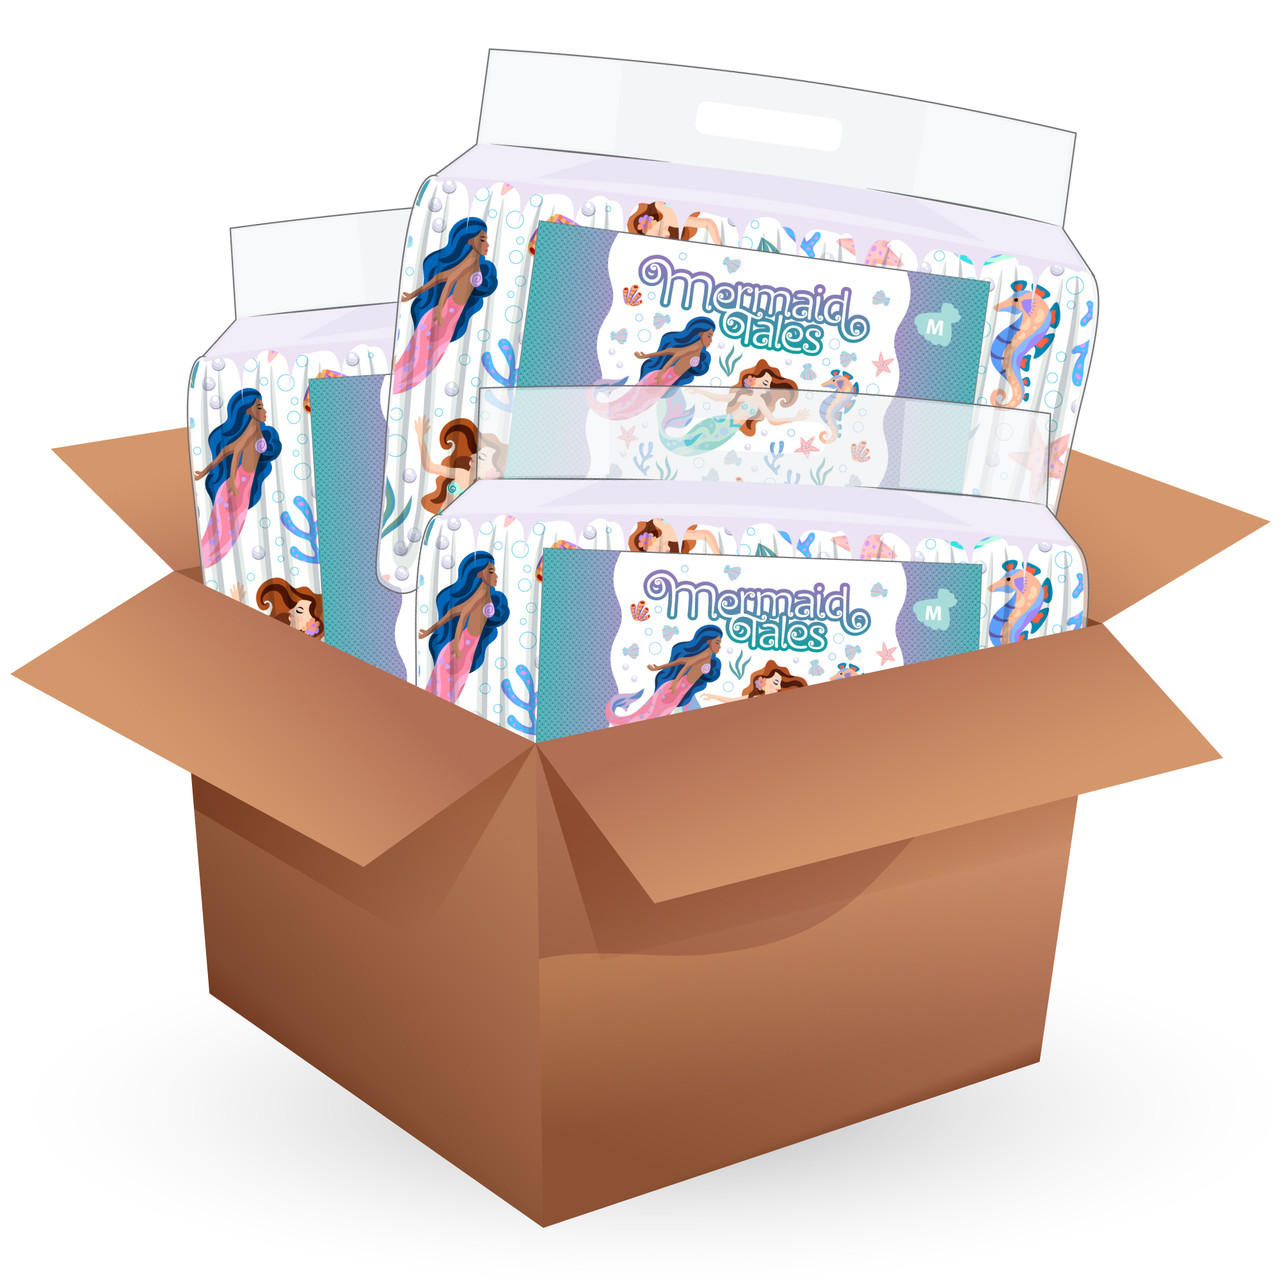  Rearz - Mermaid Tales - All-Night Adult Diapers (Sample 2 Pack)  (Medium) : Baby